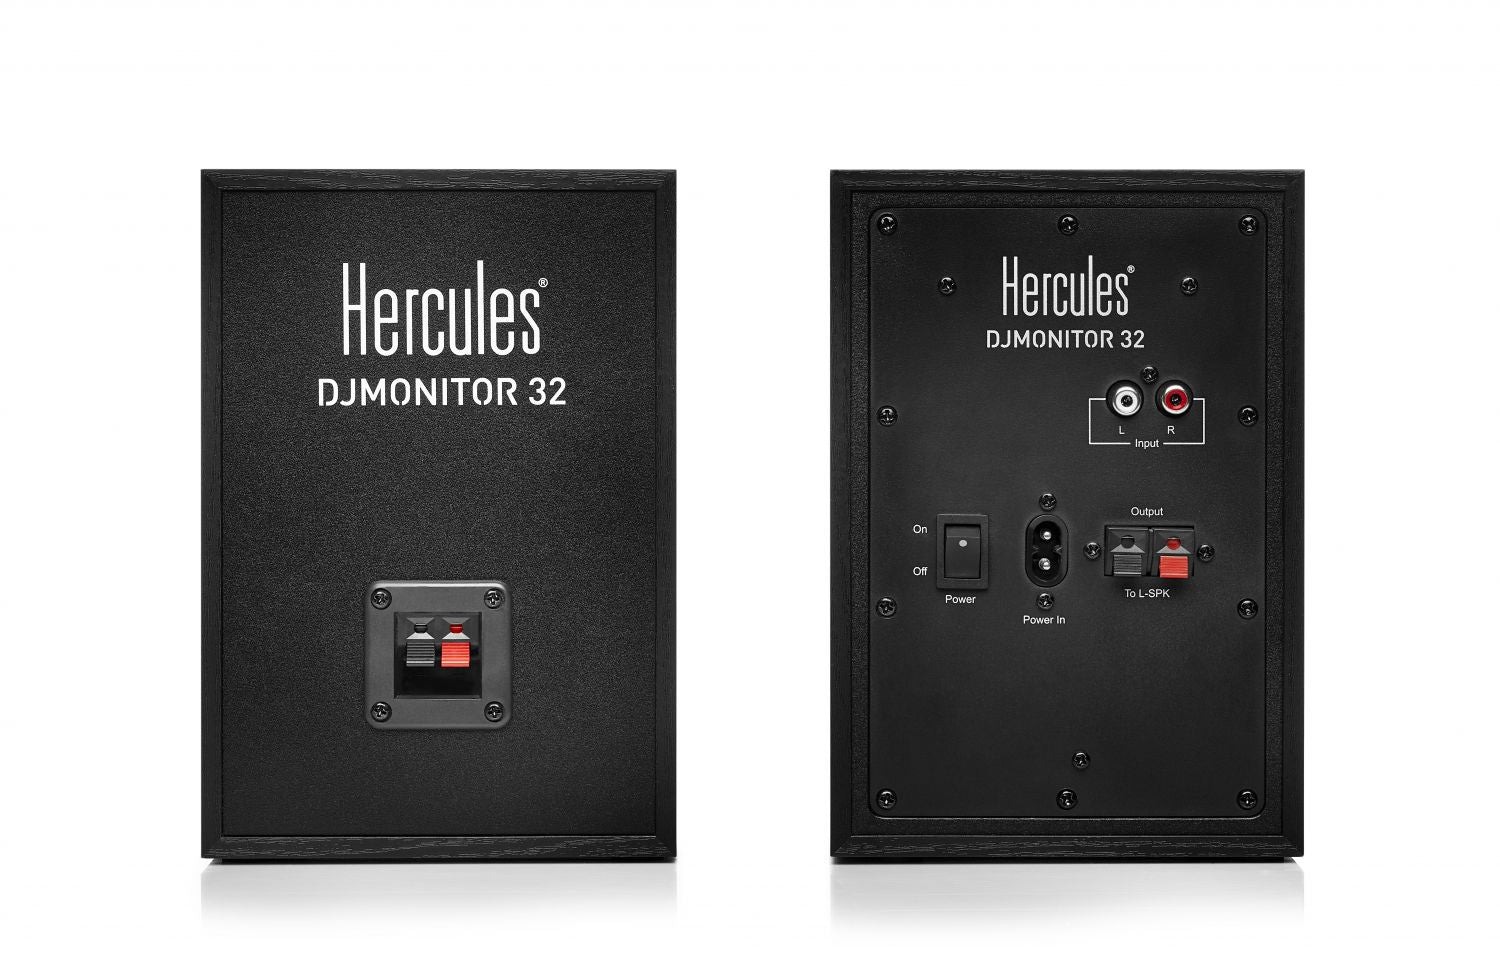 HERCULES DJ MONITOR 32 HERCULES